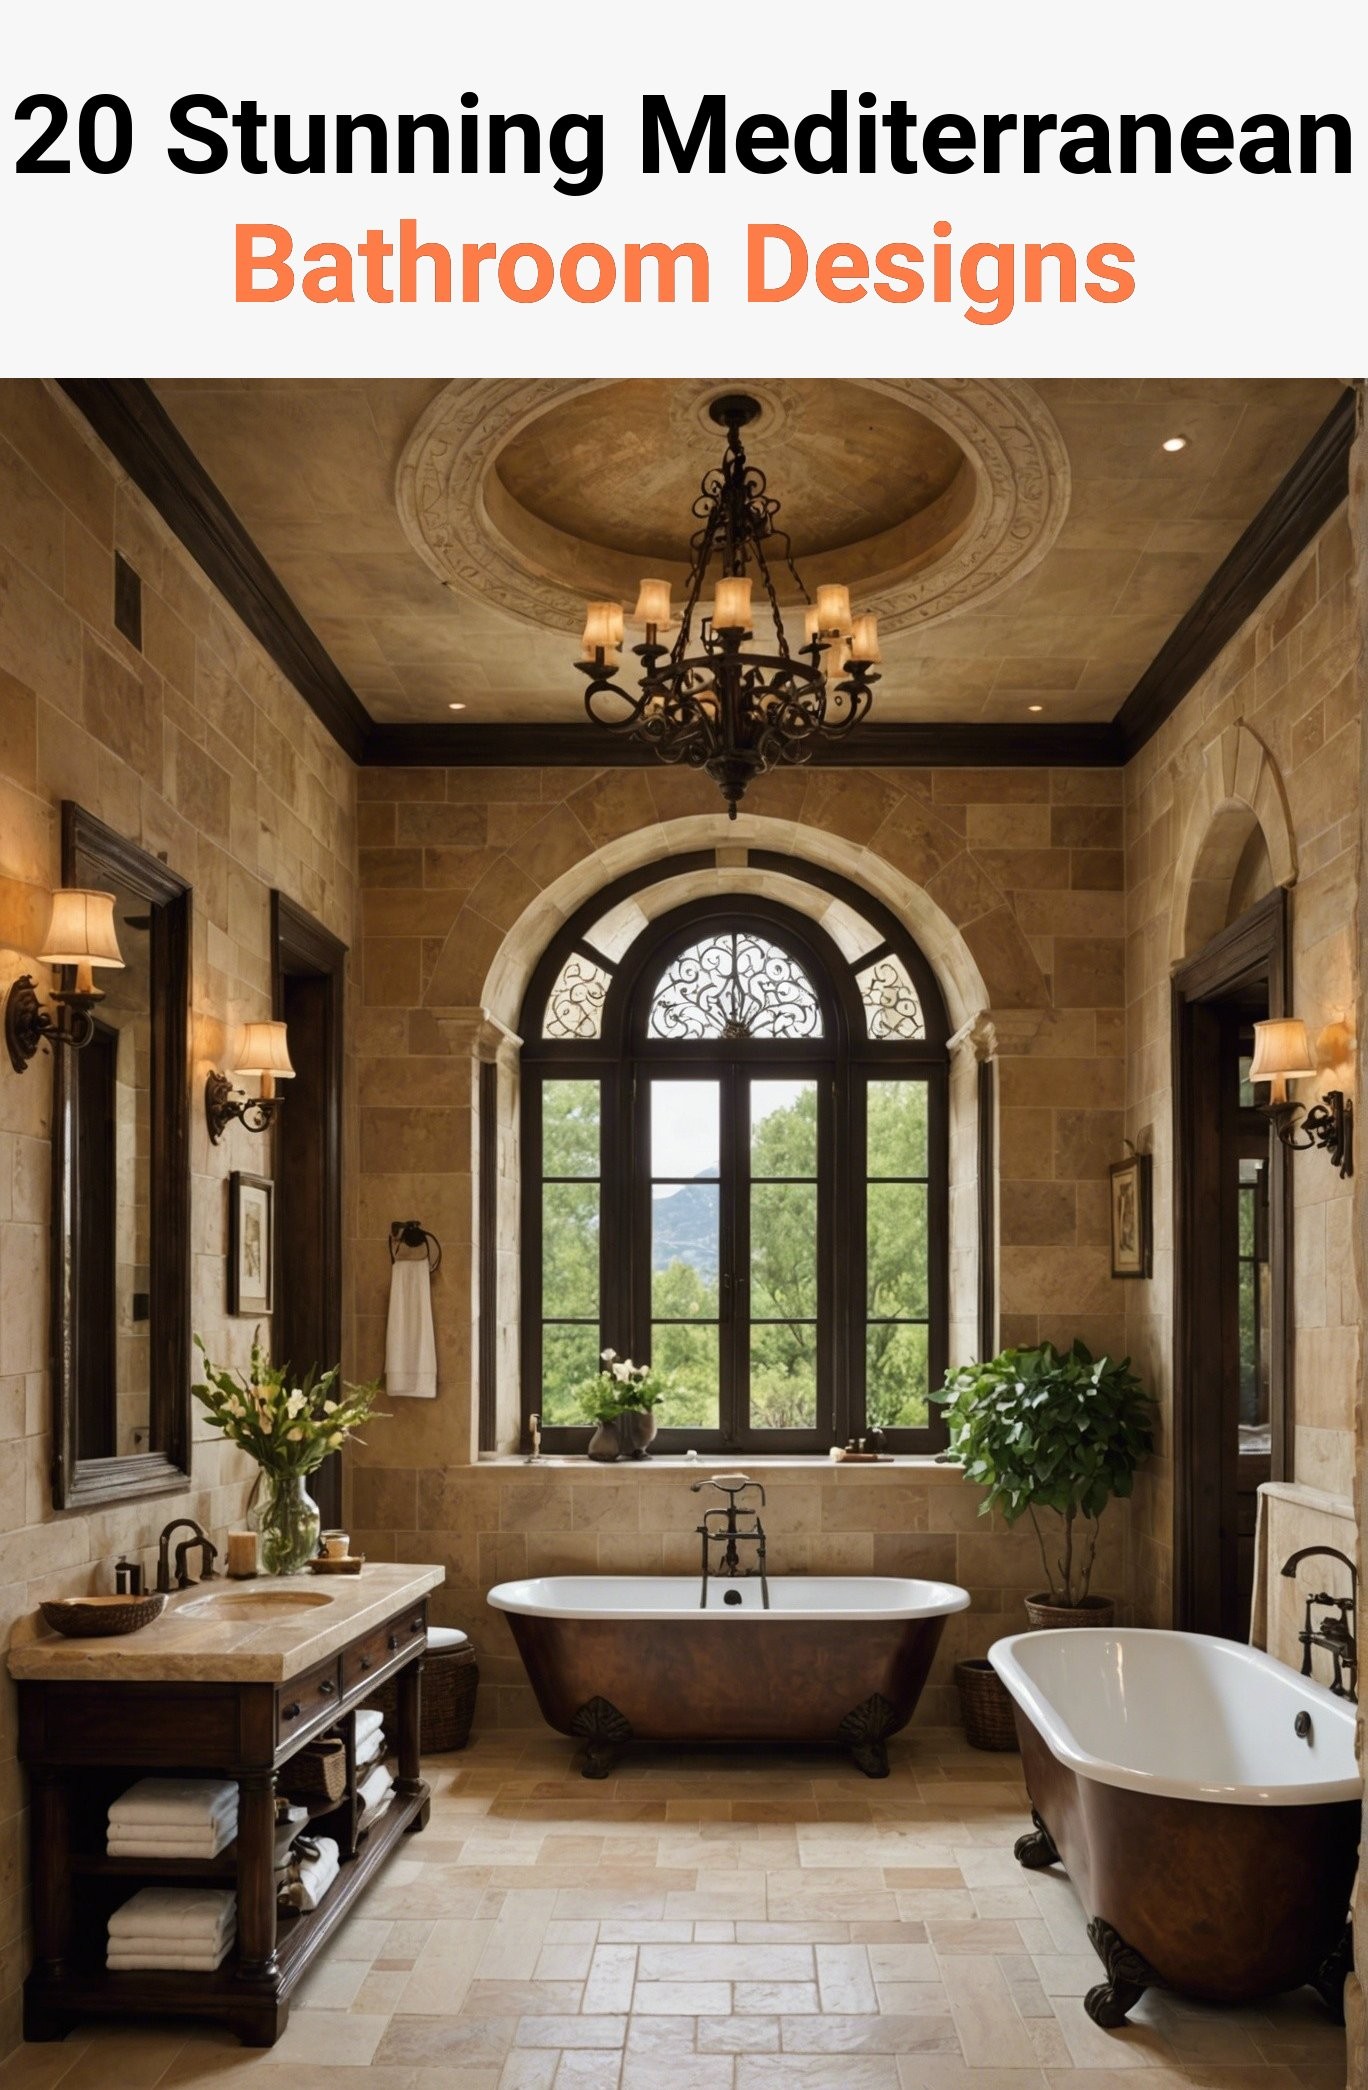 20 Stunning Mediterranean Bathroom Designs